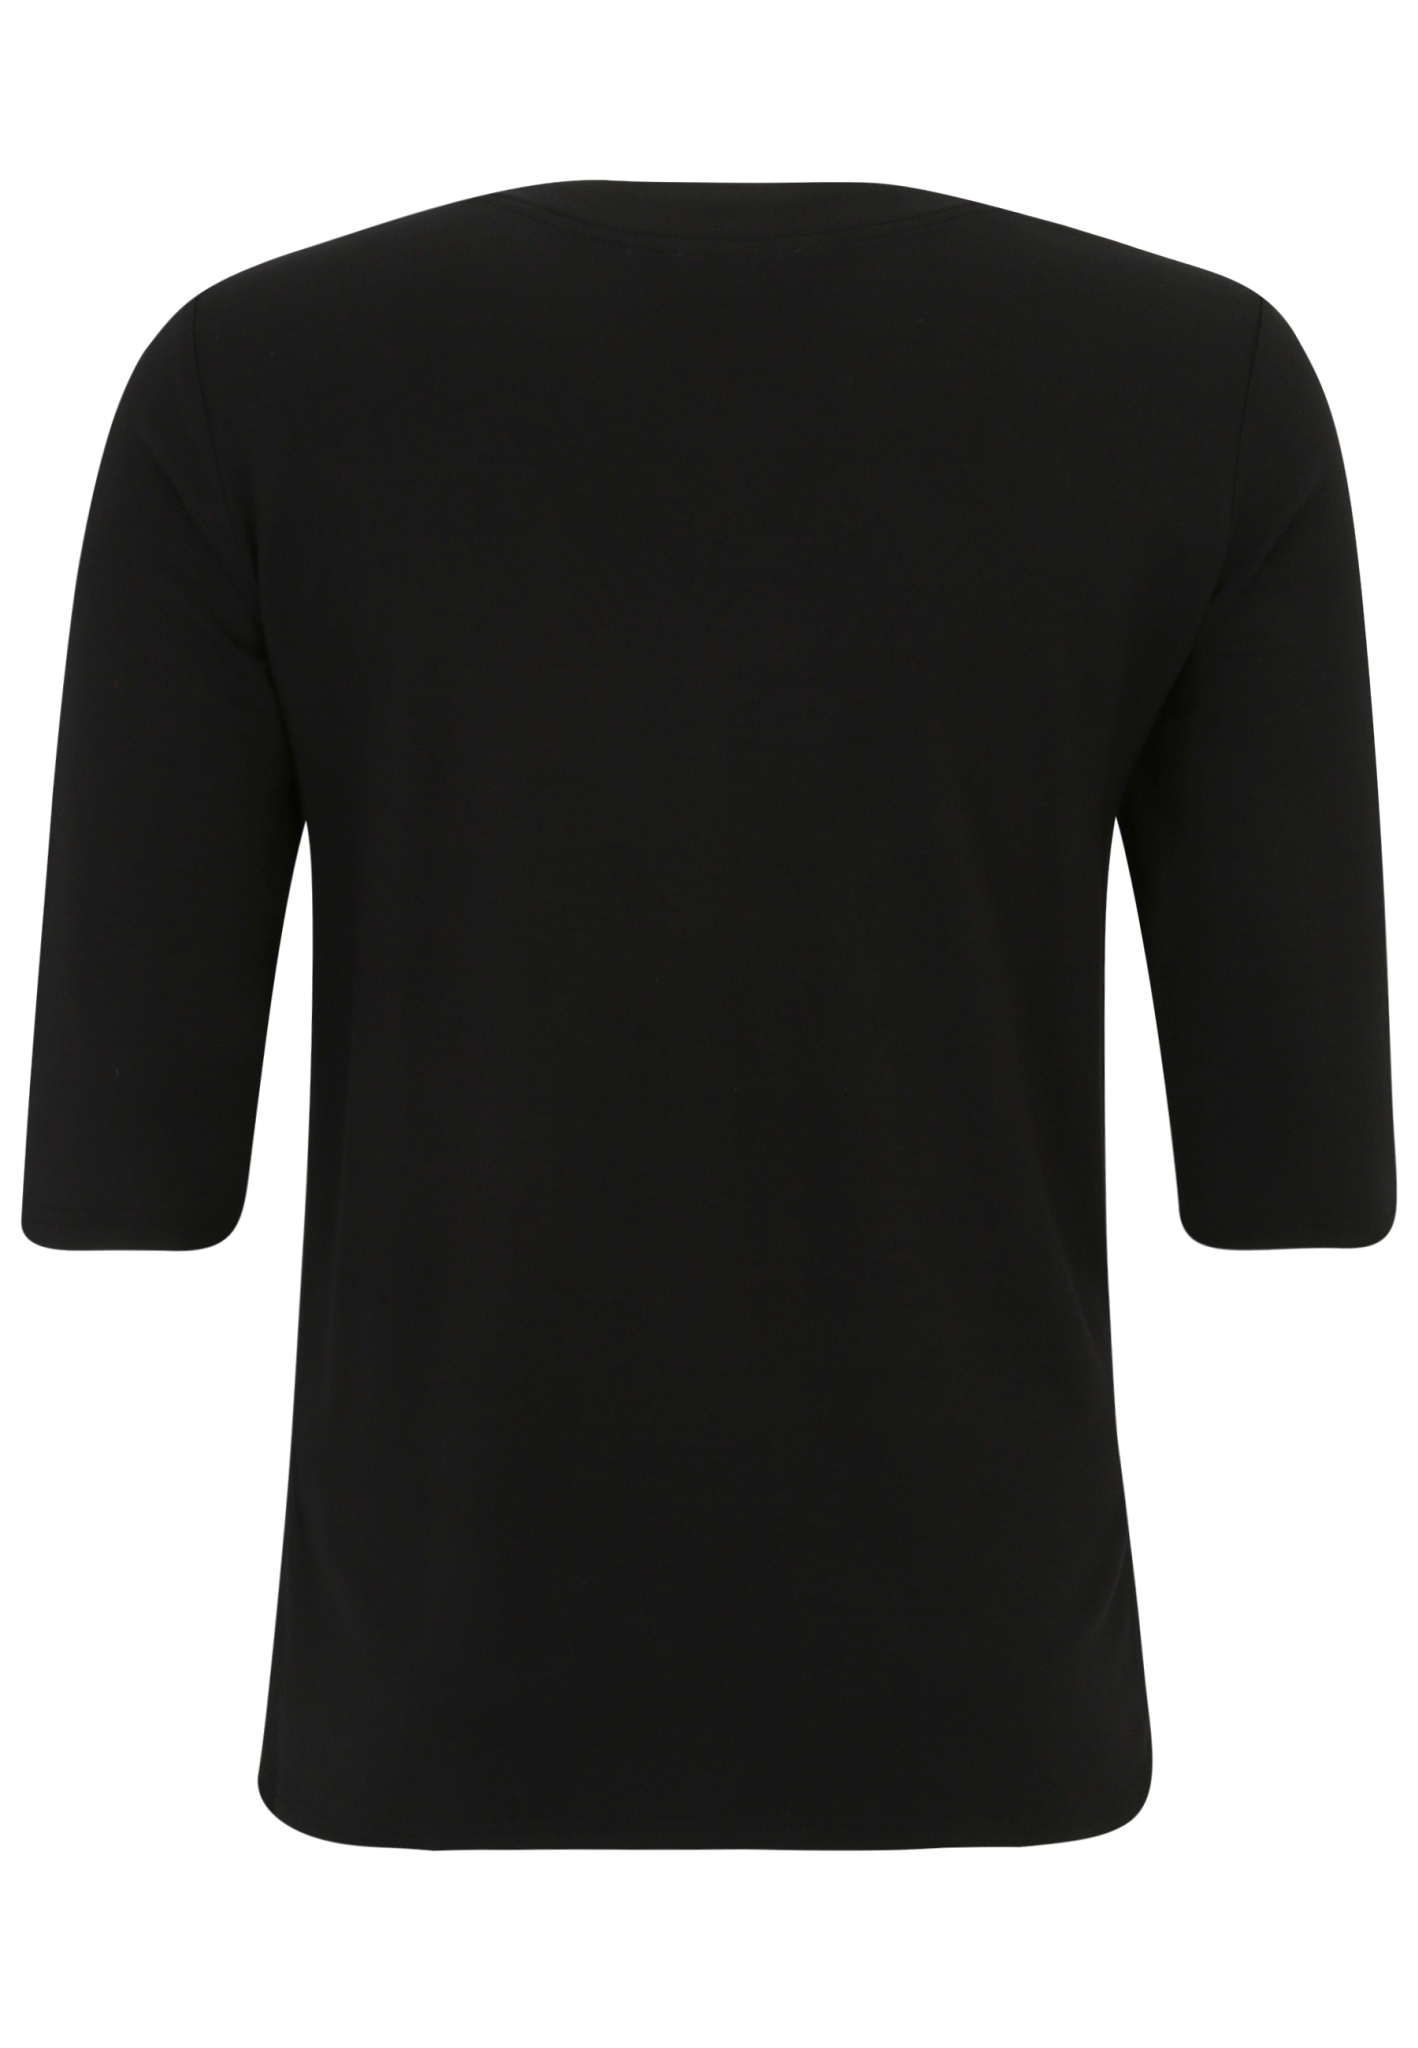 DORIS STREICH Sweatshirt mit Print-Motiv 10705769